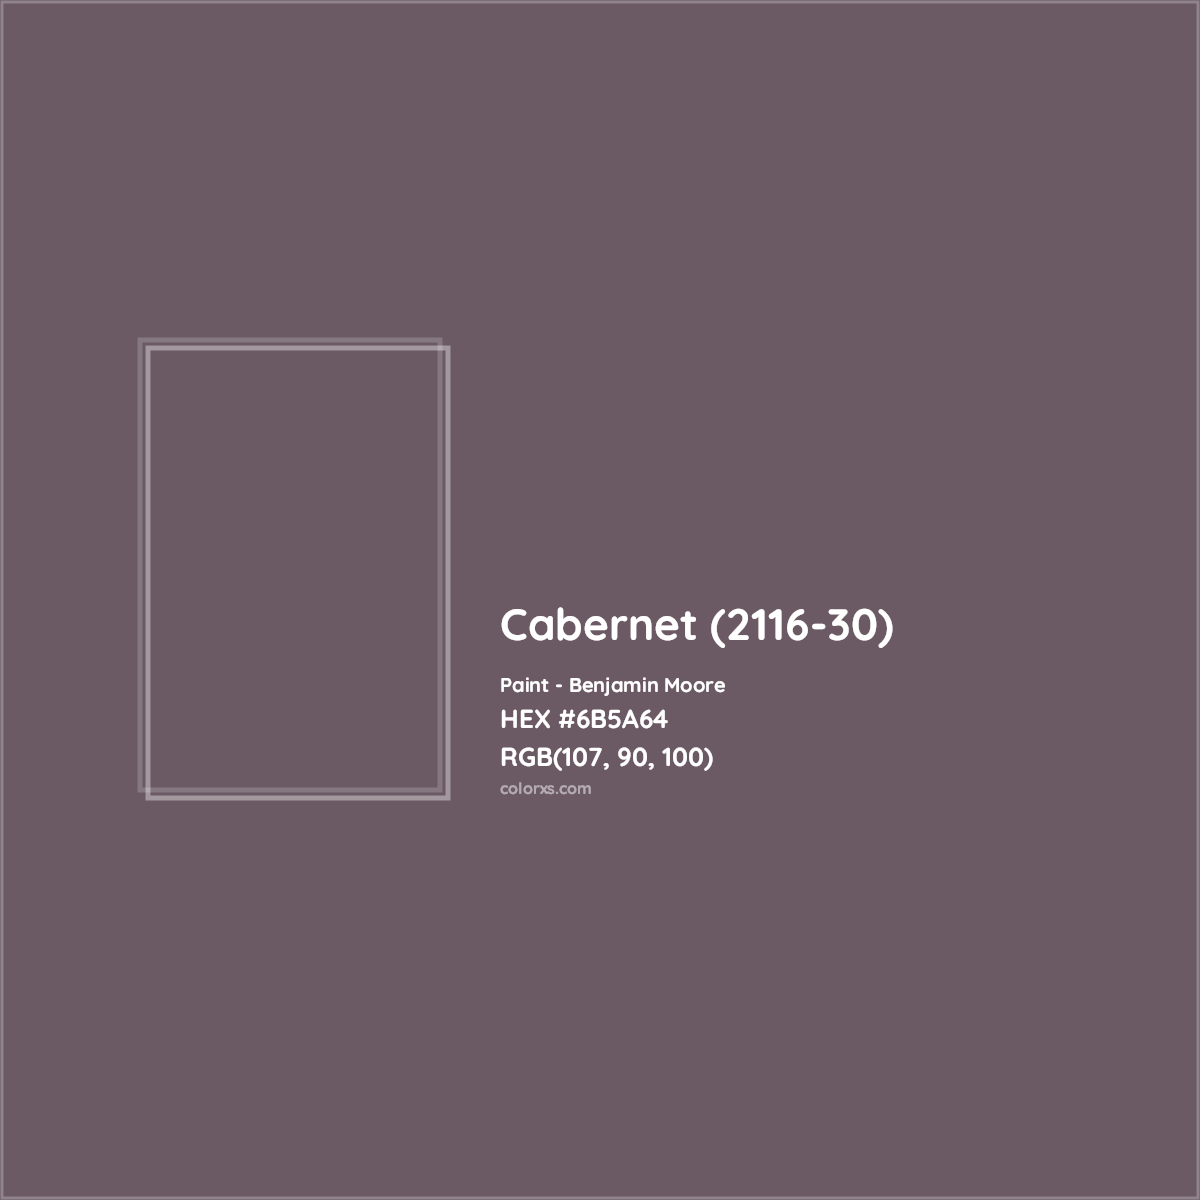 HEX #6B5A64 Cabernet (2116-30) Paint Benjamin Moore - Color Code